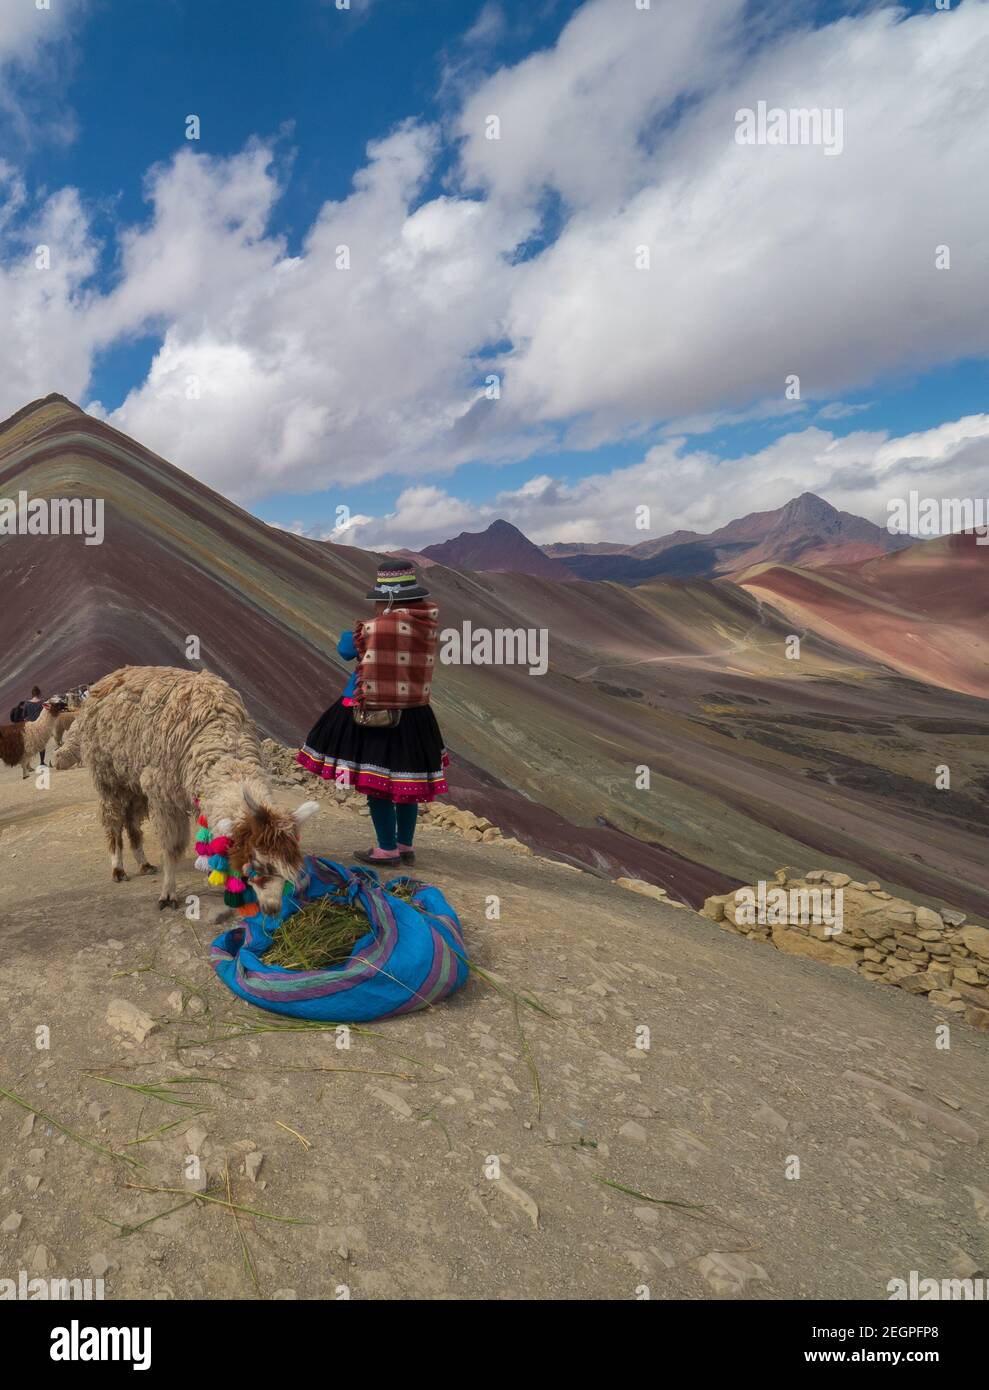 Perù, Vinicunca - 27 settembre 2019 - Llama si nutre di erba e l'indiano gode la vista sulla montagna arcobaleno Foto Stock